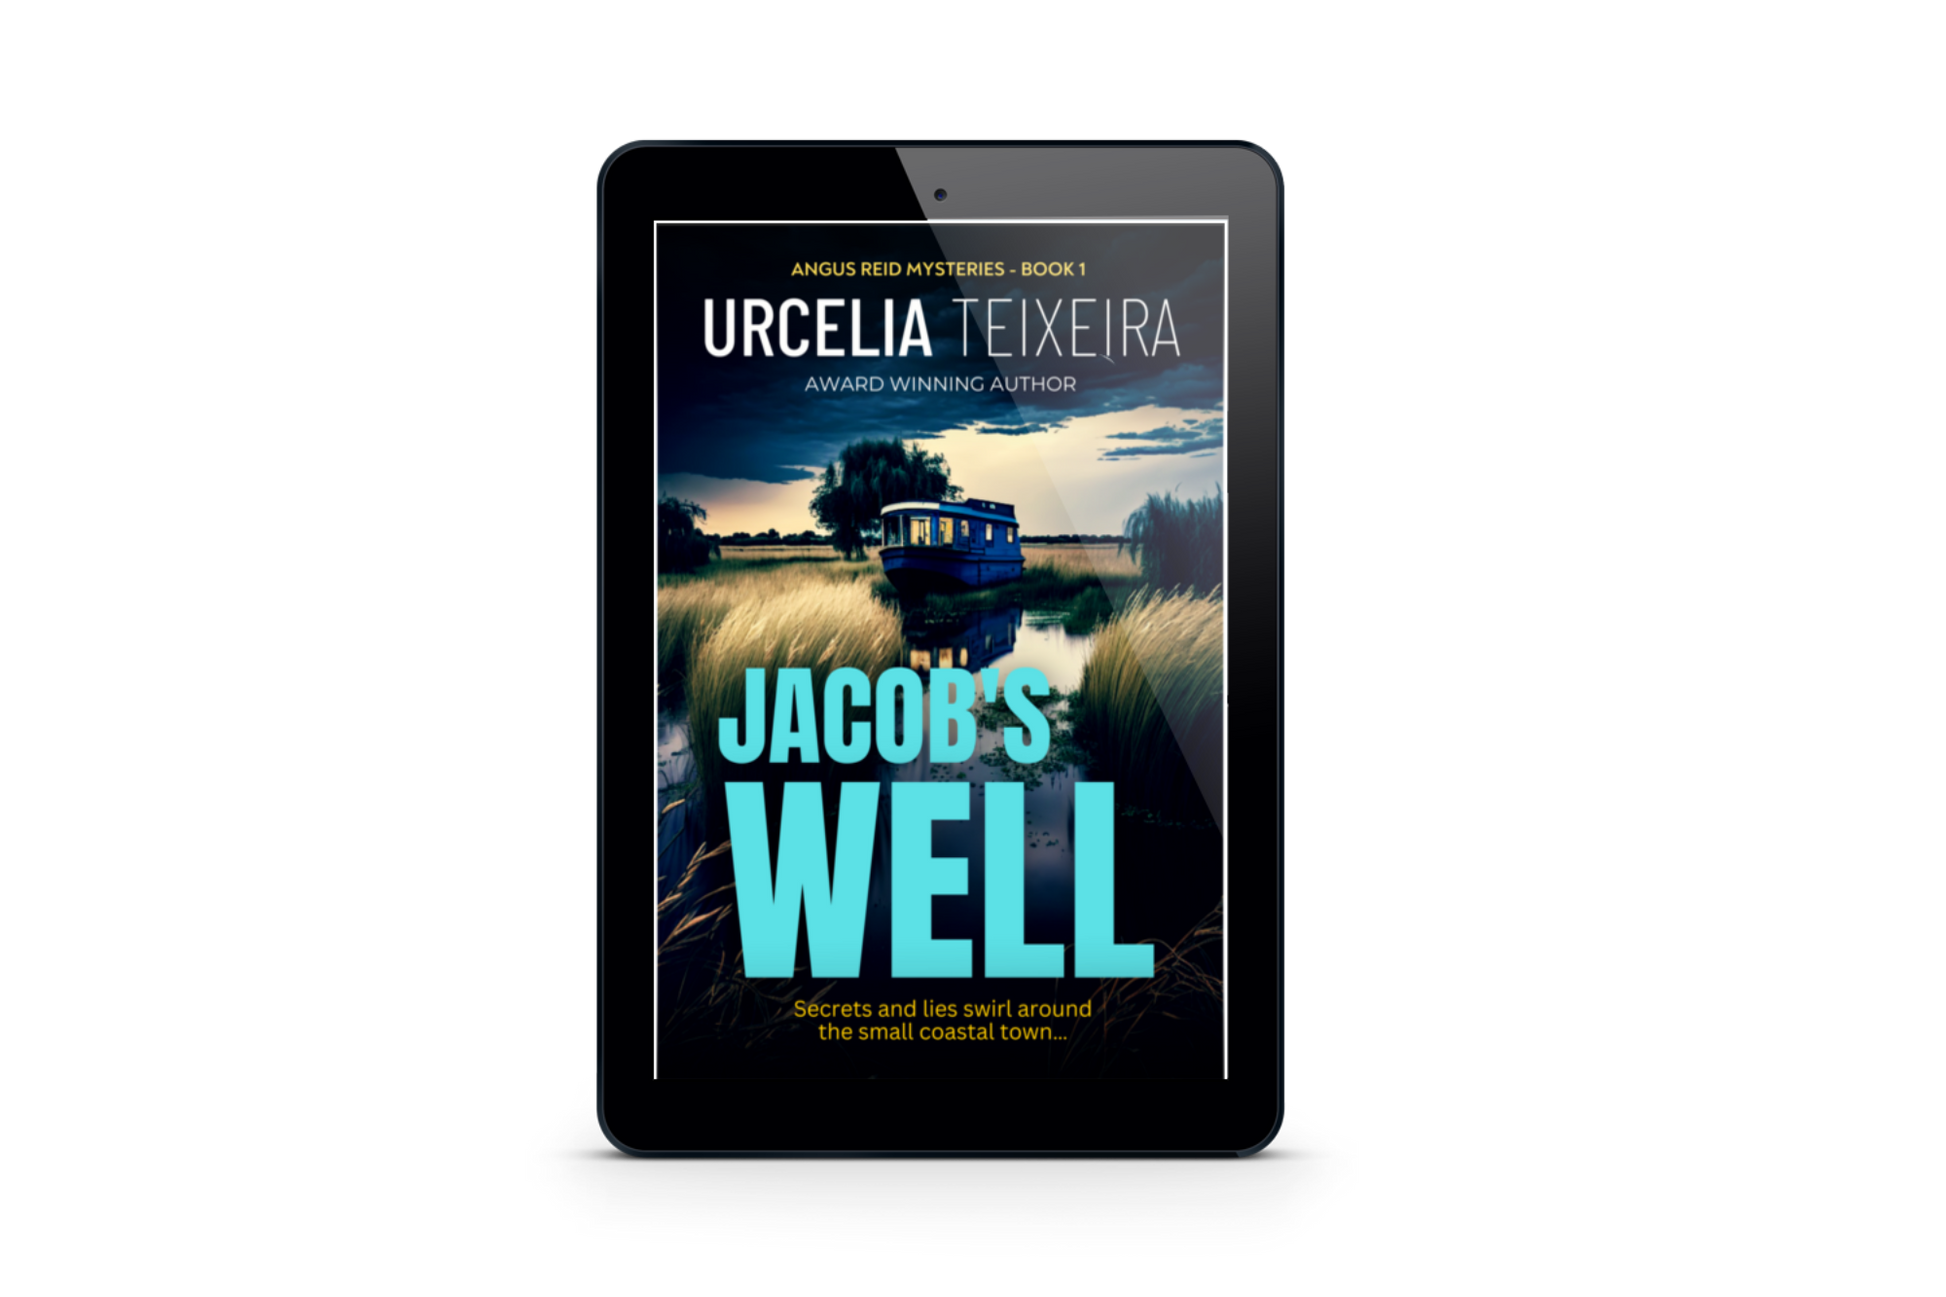 Jacob's Well by Urcelia Teixeira